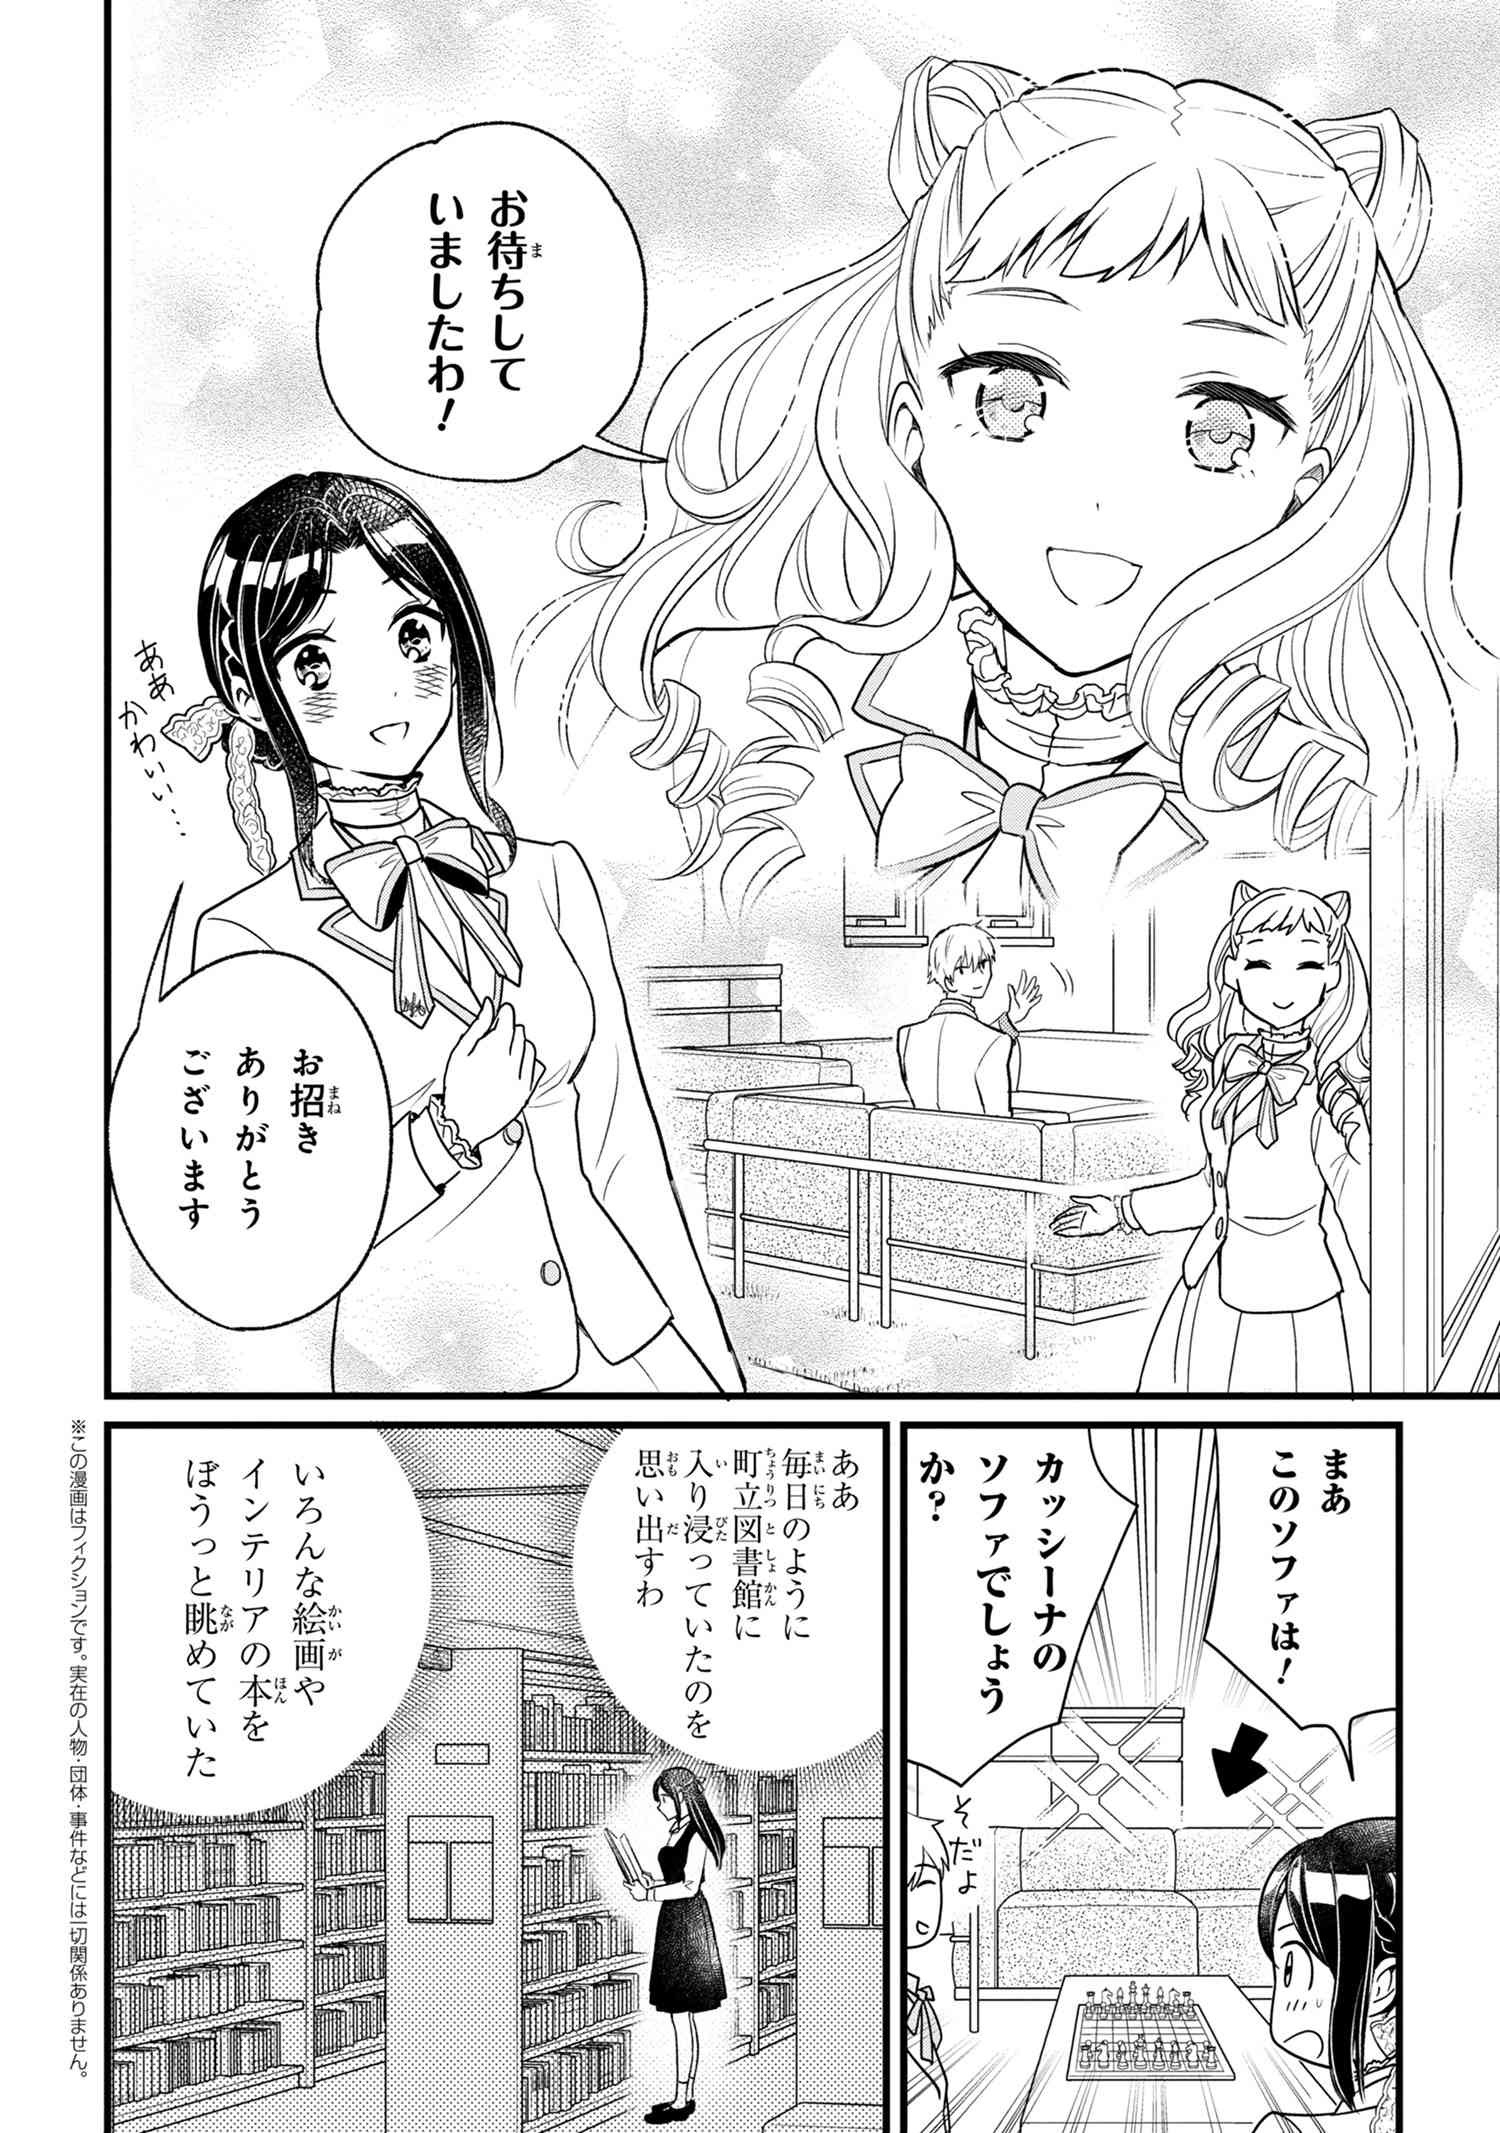 Reiko no Fuugi Akuyaku Reijou to Yobarete imasu ga, tada no Binbou Musume desu - Chapter 2-2 - Page 1